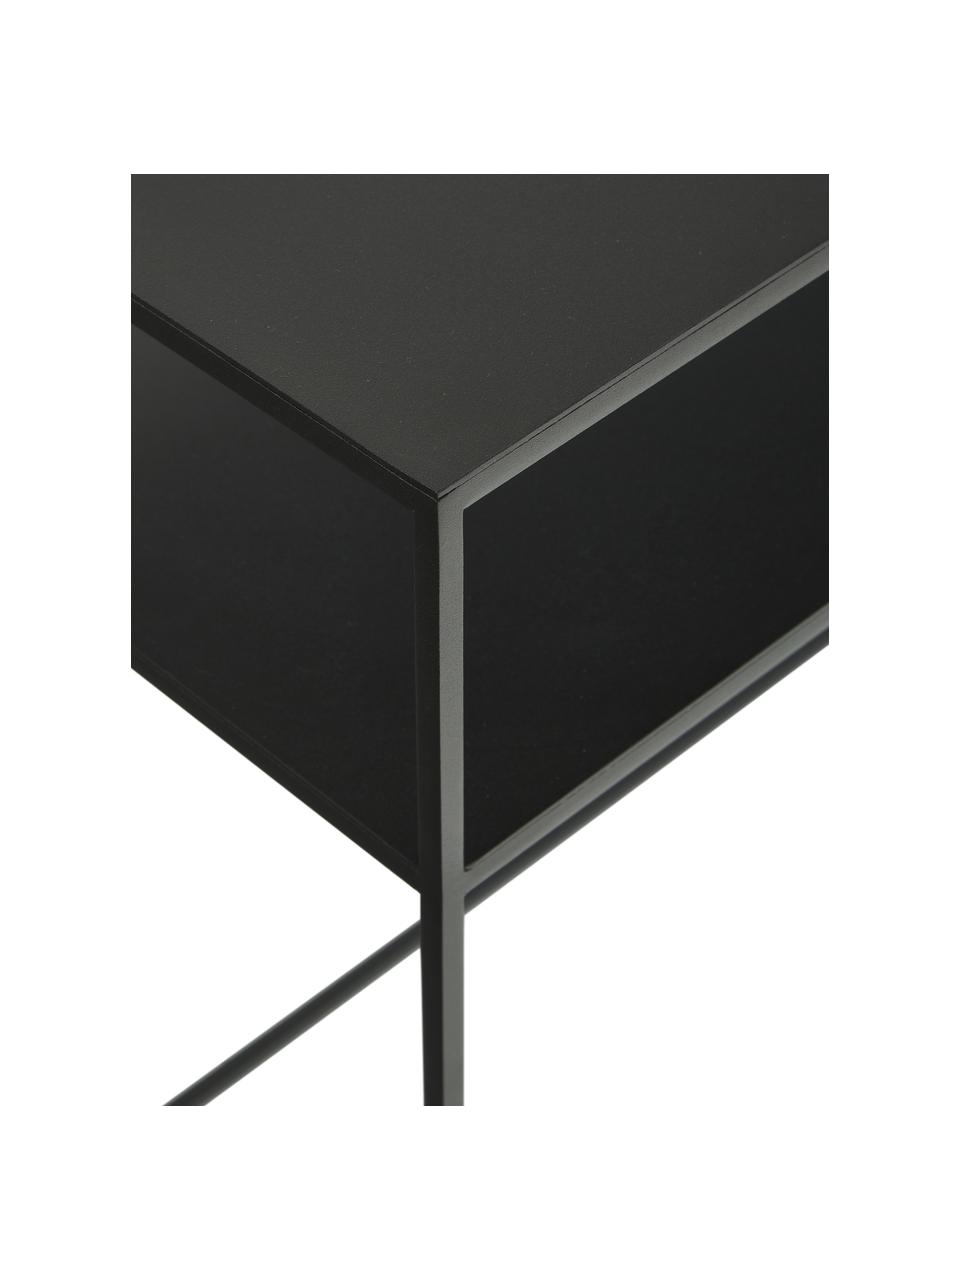 Metalen sidetable Tensio Duo in zwart, Gepoedercoat metaal, Zwart, B 100 x D 35 cm